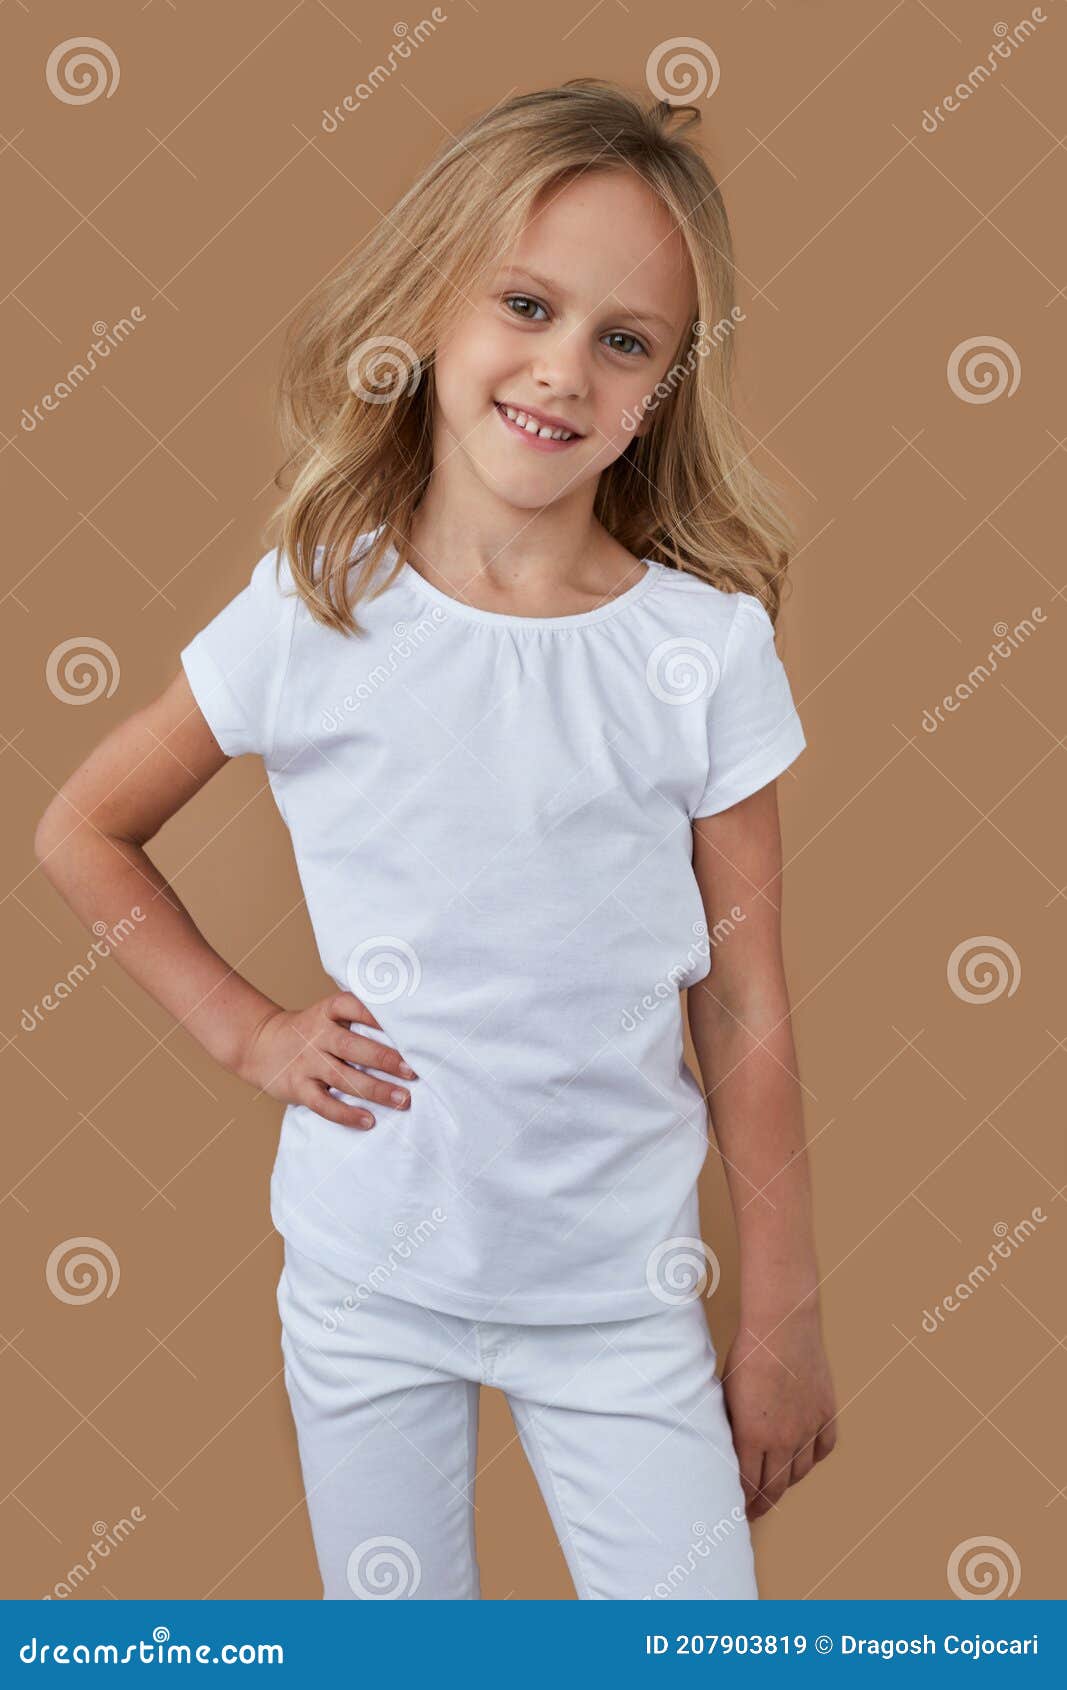 Frontal De Adorable Niña Rubia Con El Pelo Ondulado Vestida Con Ropa Sobre Fondo Beige Imagen de archivo - Imagen de hija, pelo: 207903819